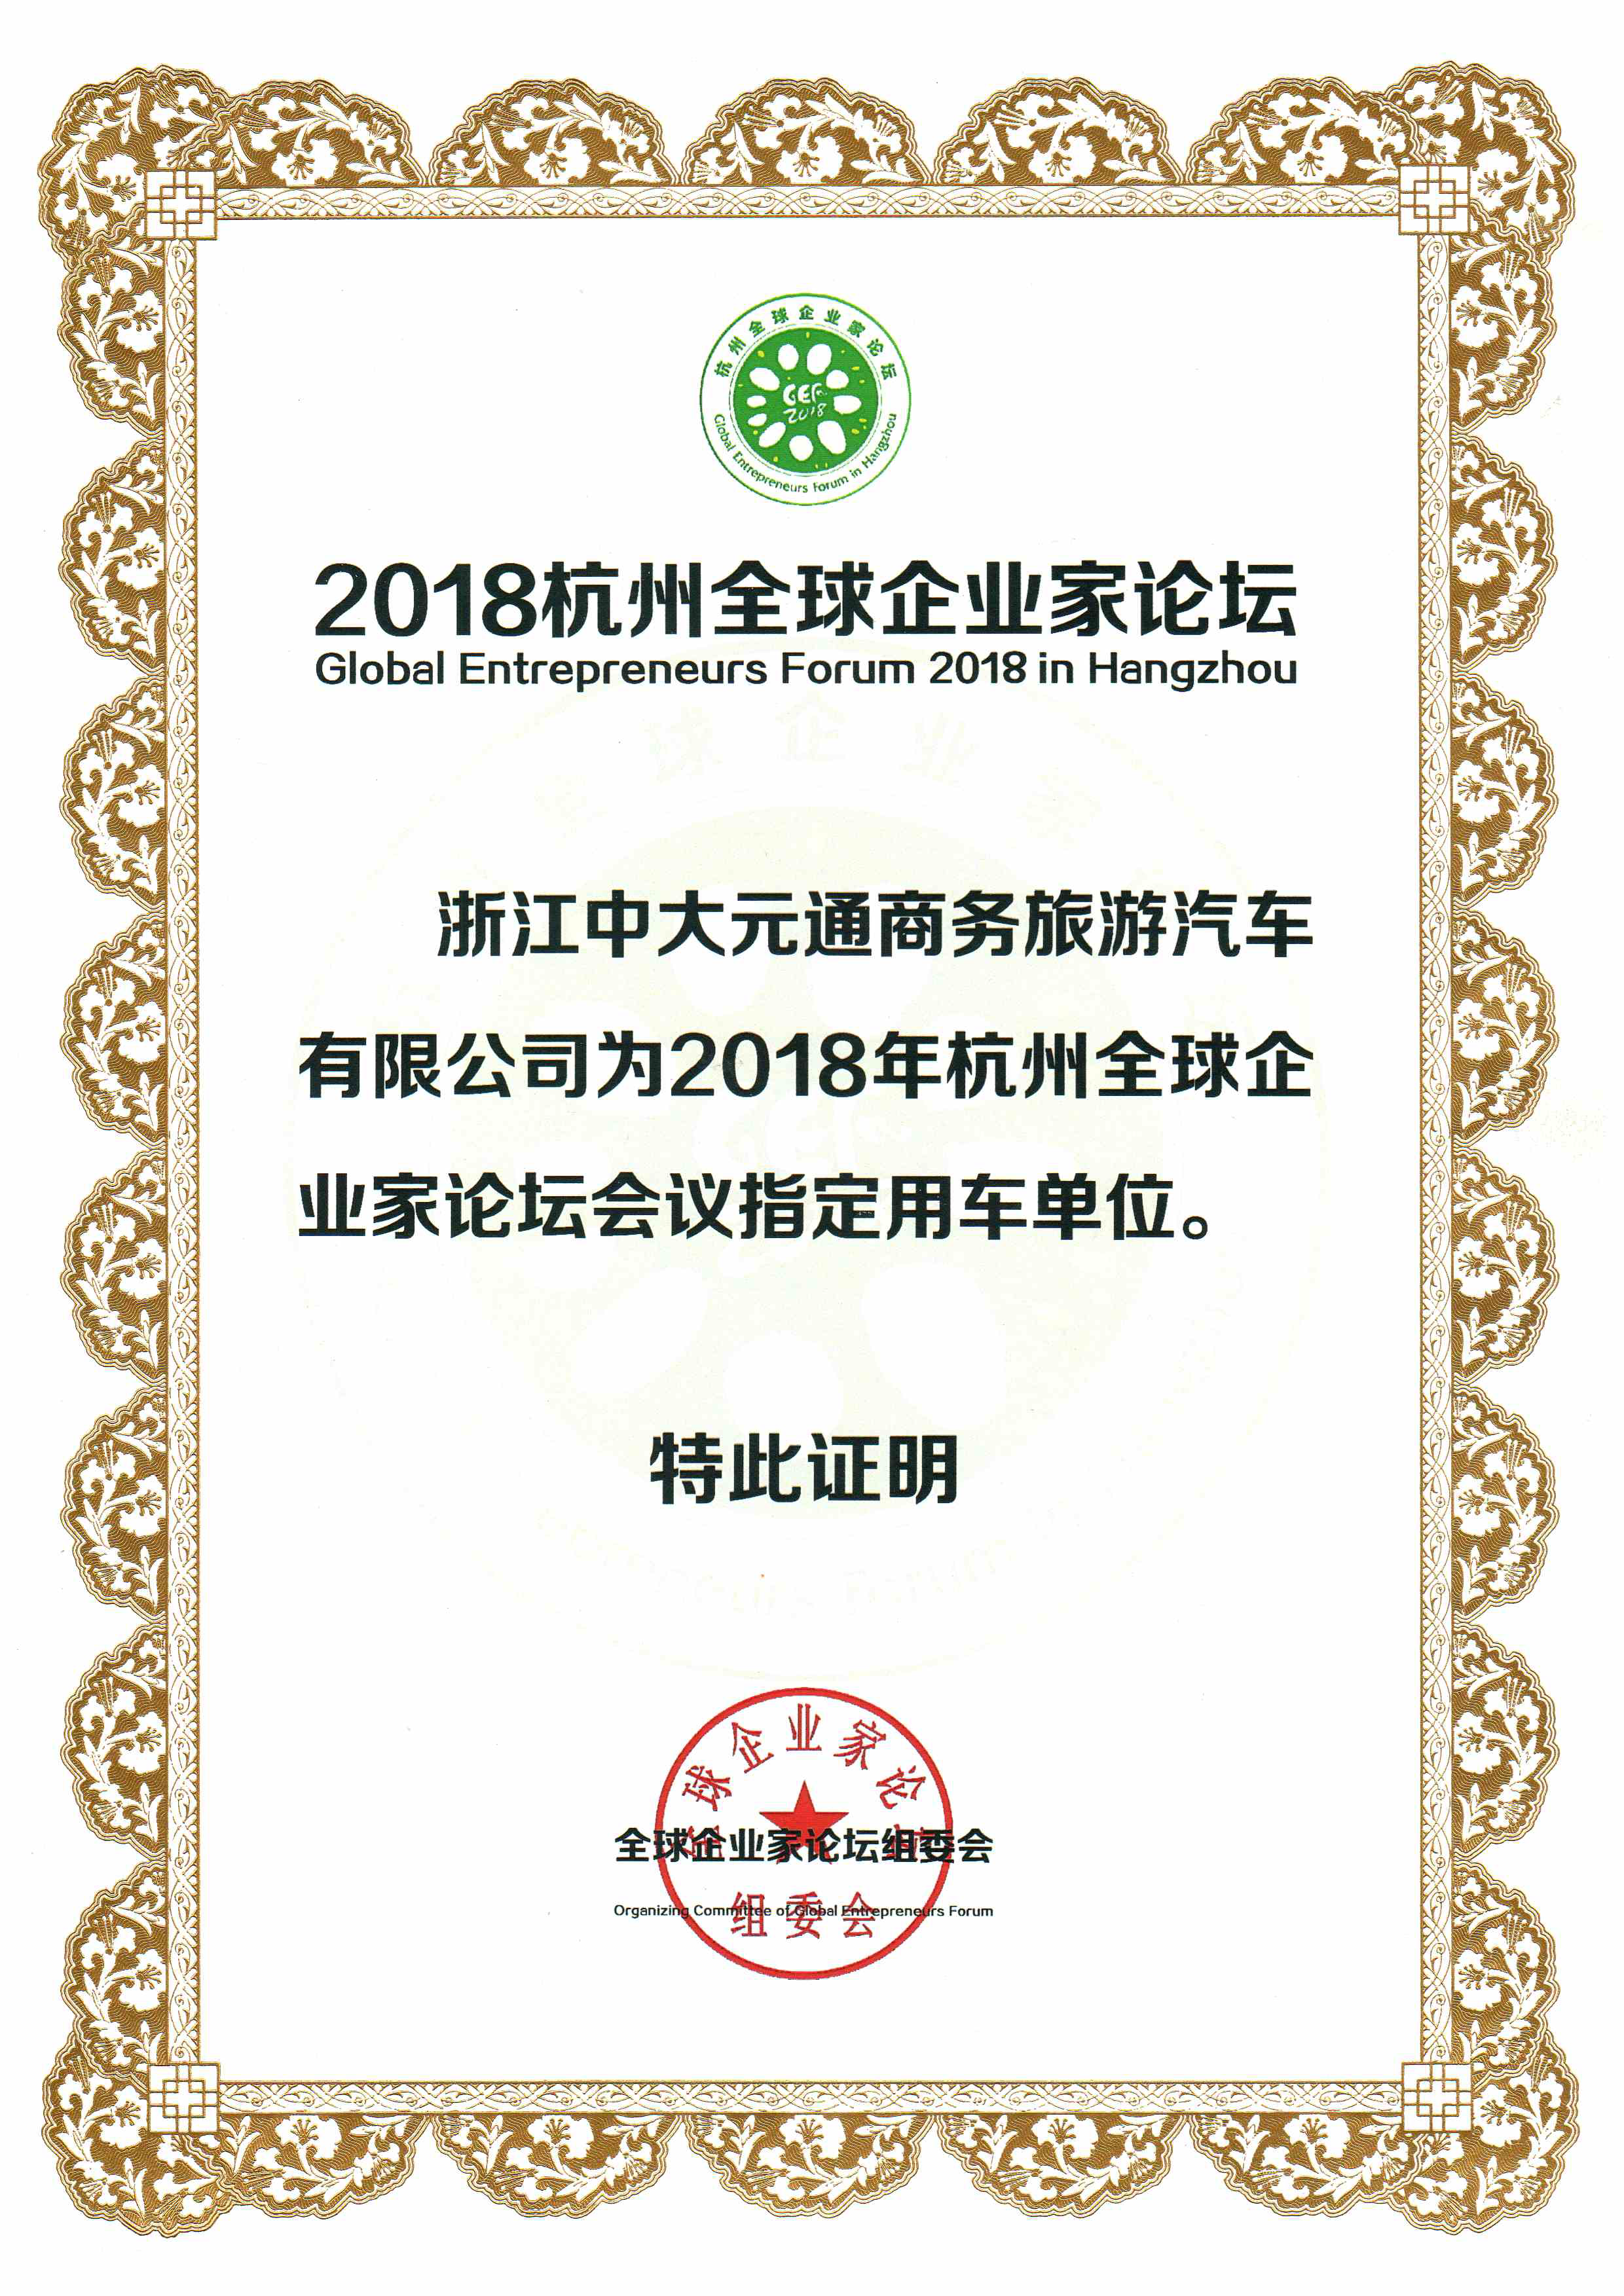 2018年杭州全球企业家论坛会议指定用车单位.png